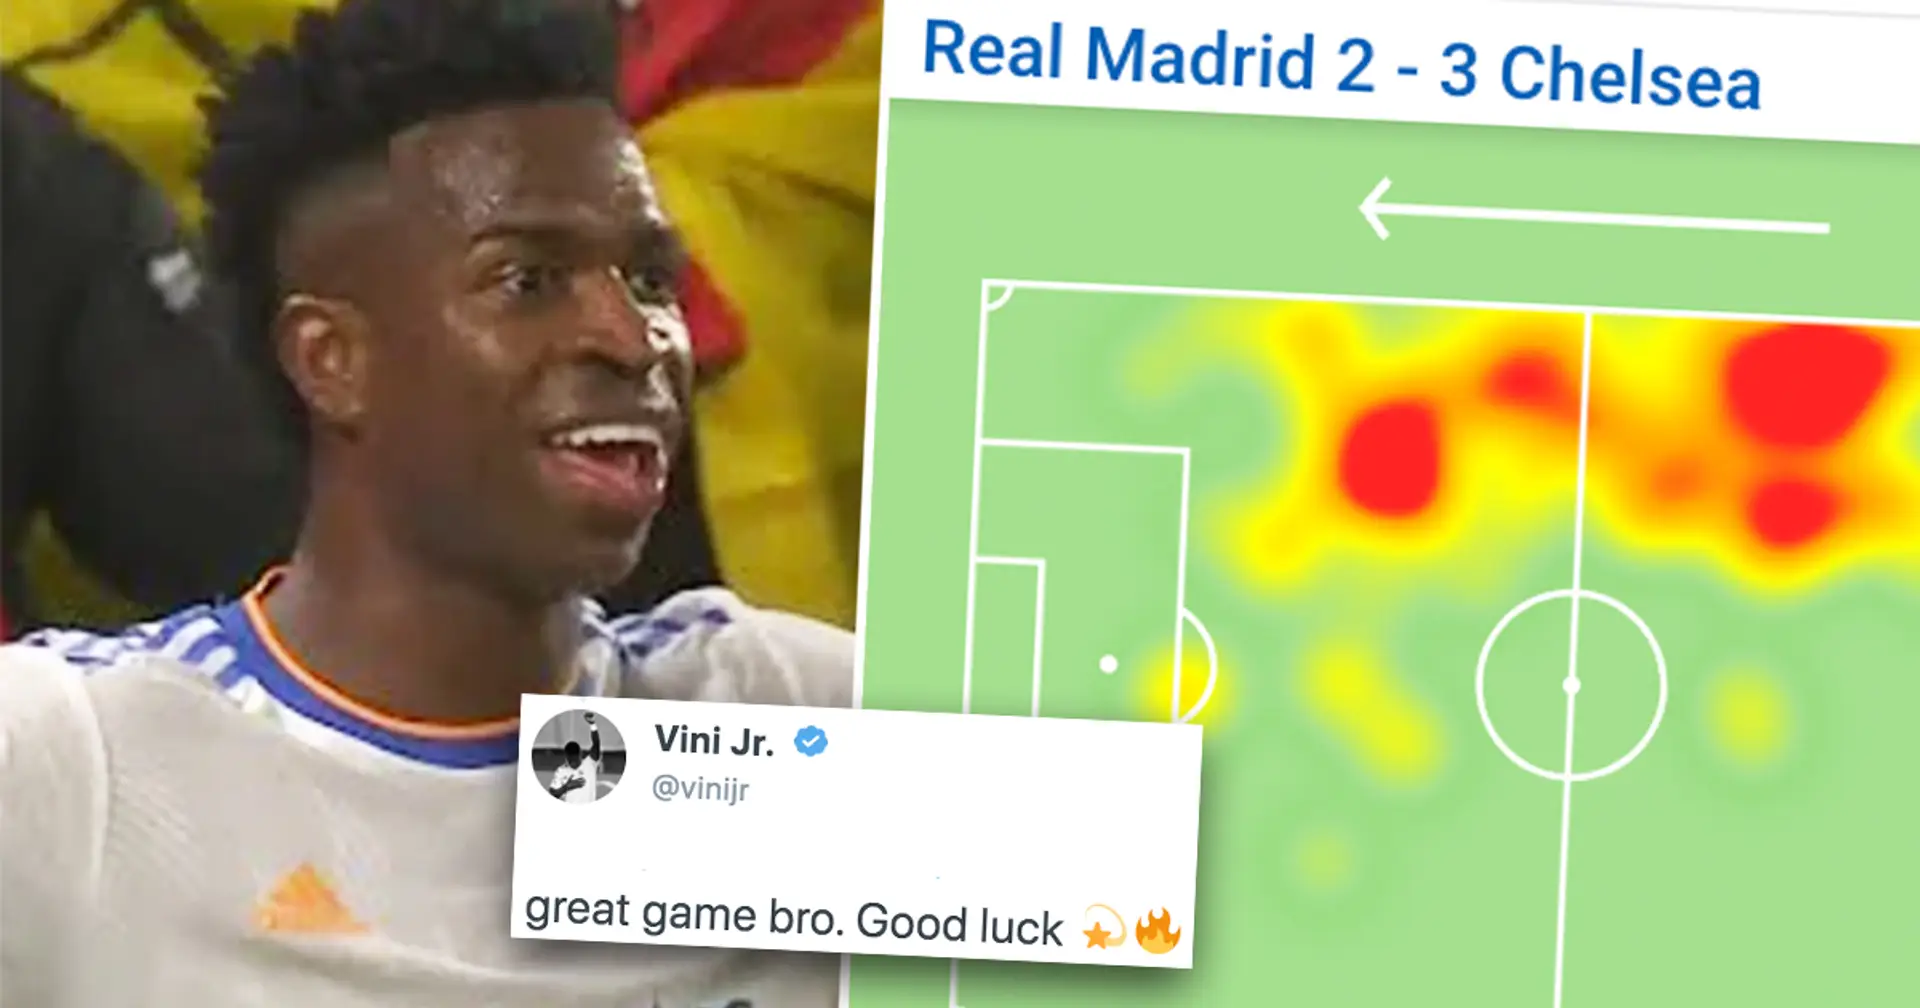 Les recruteurs du Real Madrid "impressionnés" par un joueur de Chelsea, Vinicius Jr lui envoie un message